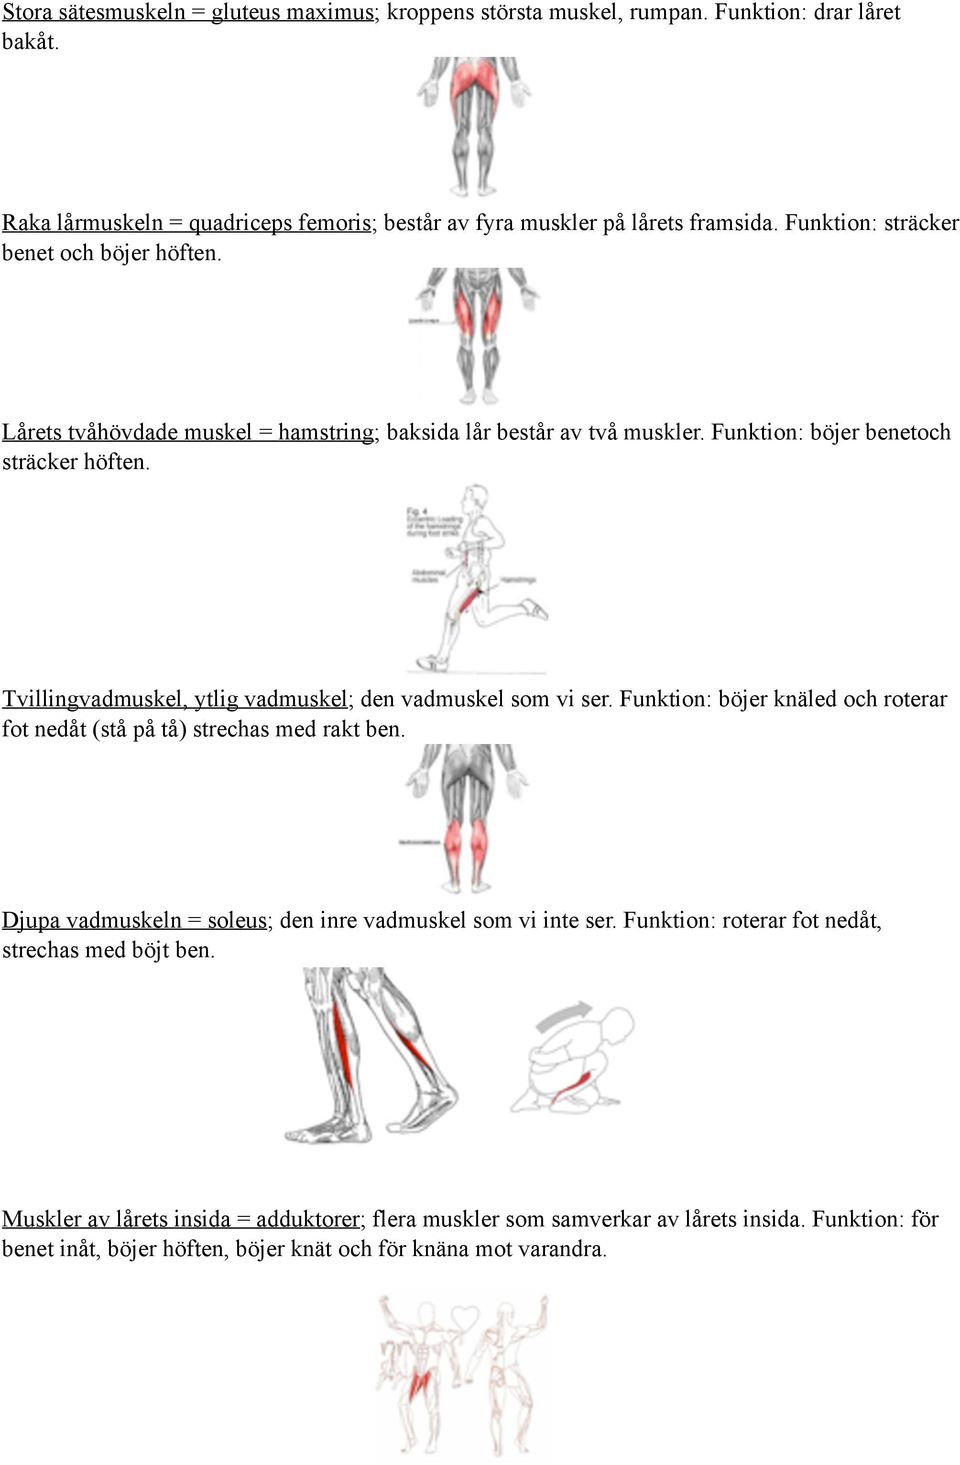 Tvillingvadmuskel, ytlig vadmuskel; den vadmuskel som vi ser. Funktion: böjer knäled och roterar fot nedåt (stå på tå) strechas med rakt ben.